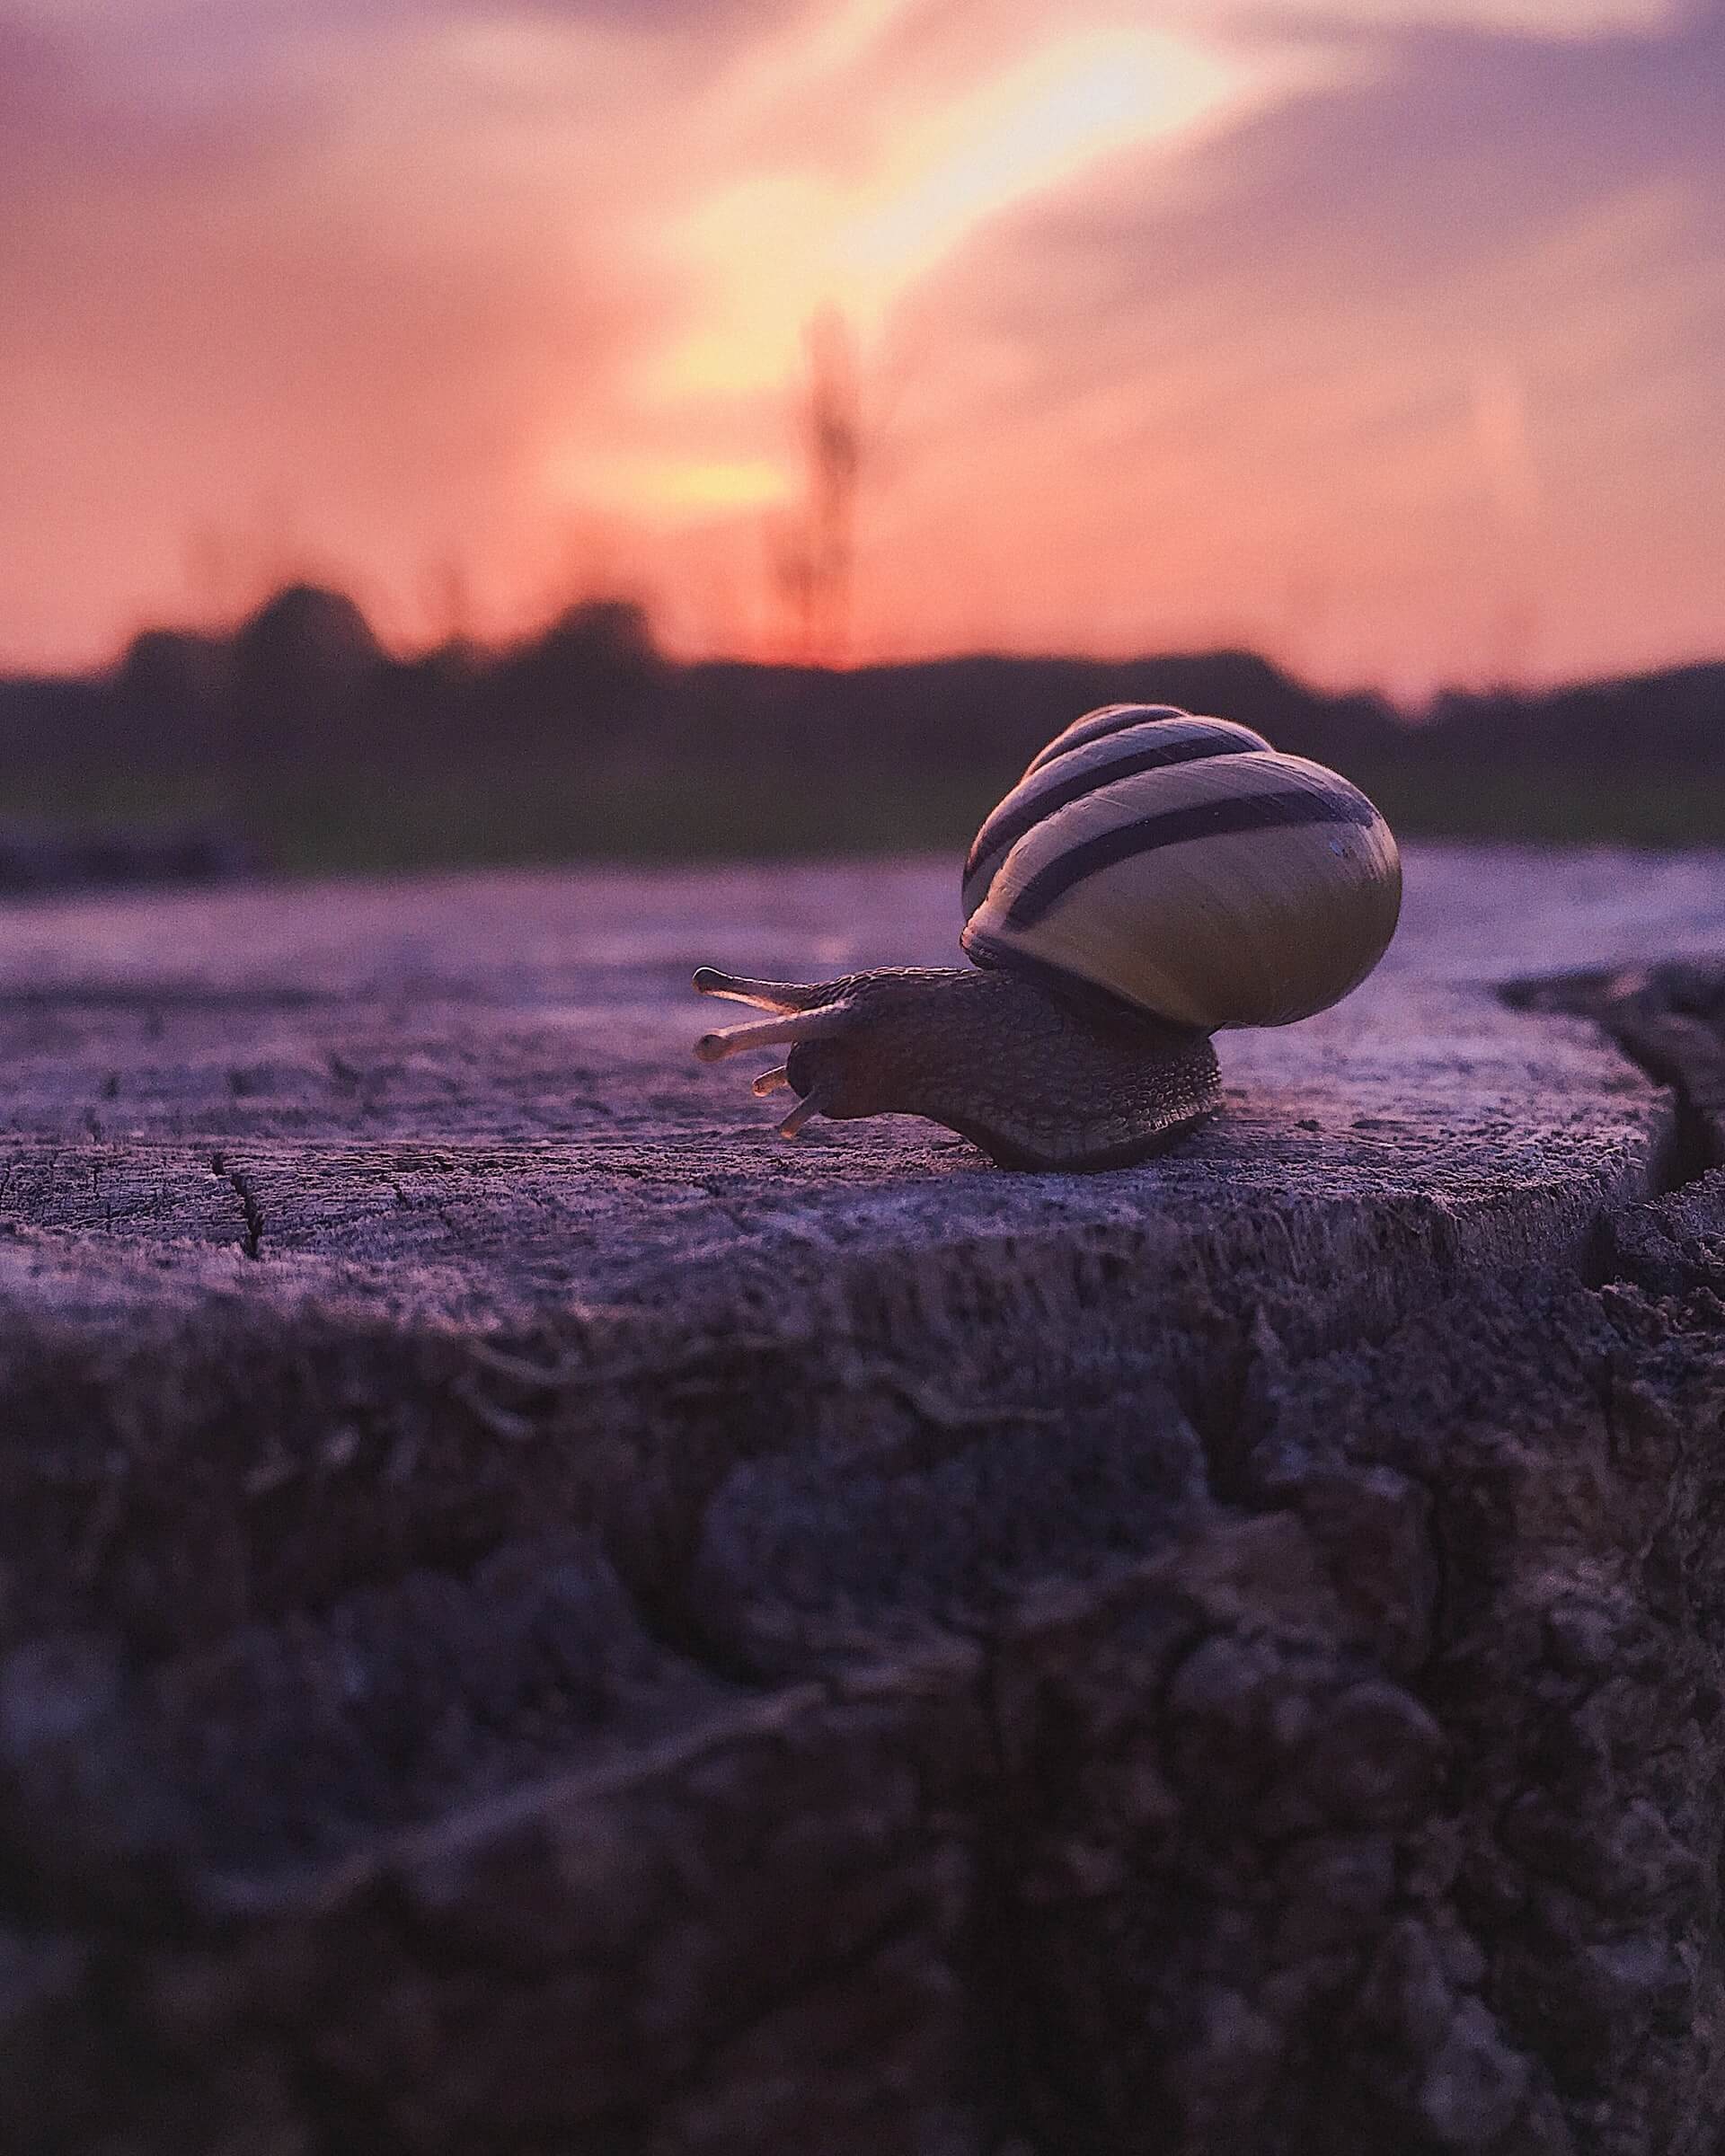 蜗牛和日落代表了消除旅行疲劳所需的生活节奏